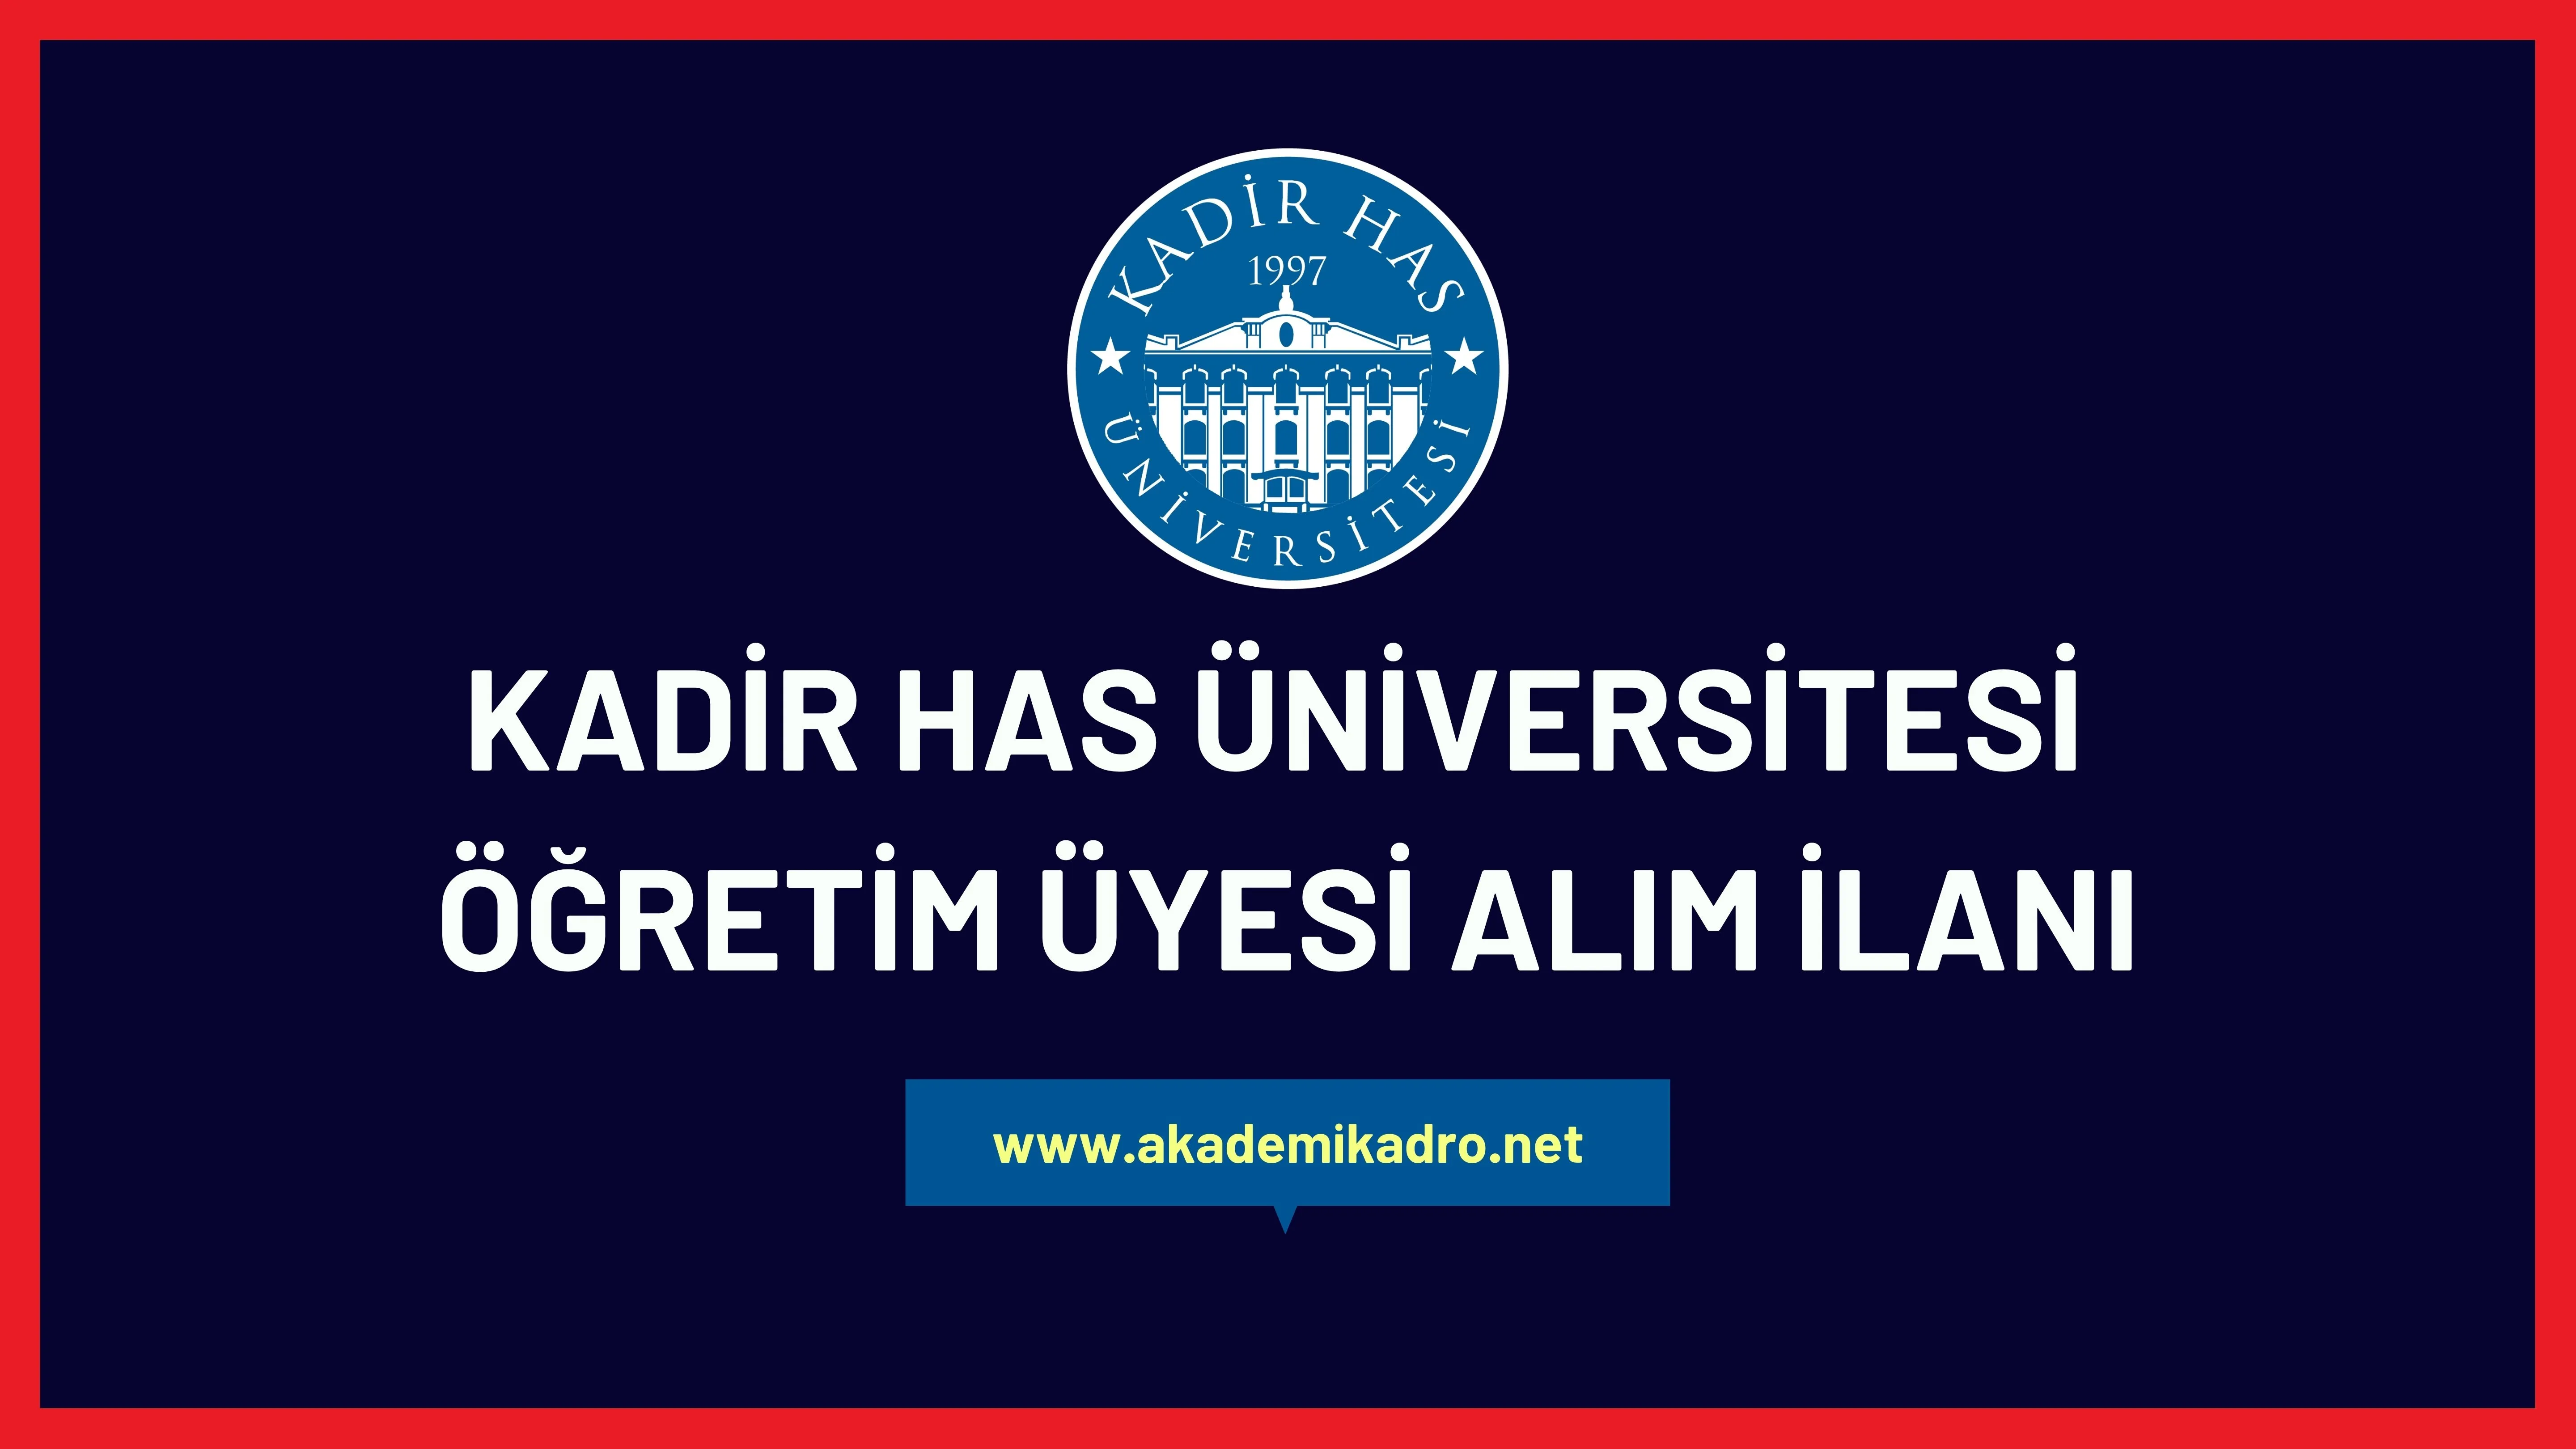 Kadir Has Üniversitesi 2 akademik personel alacak